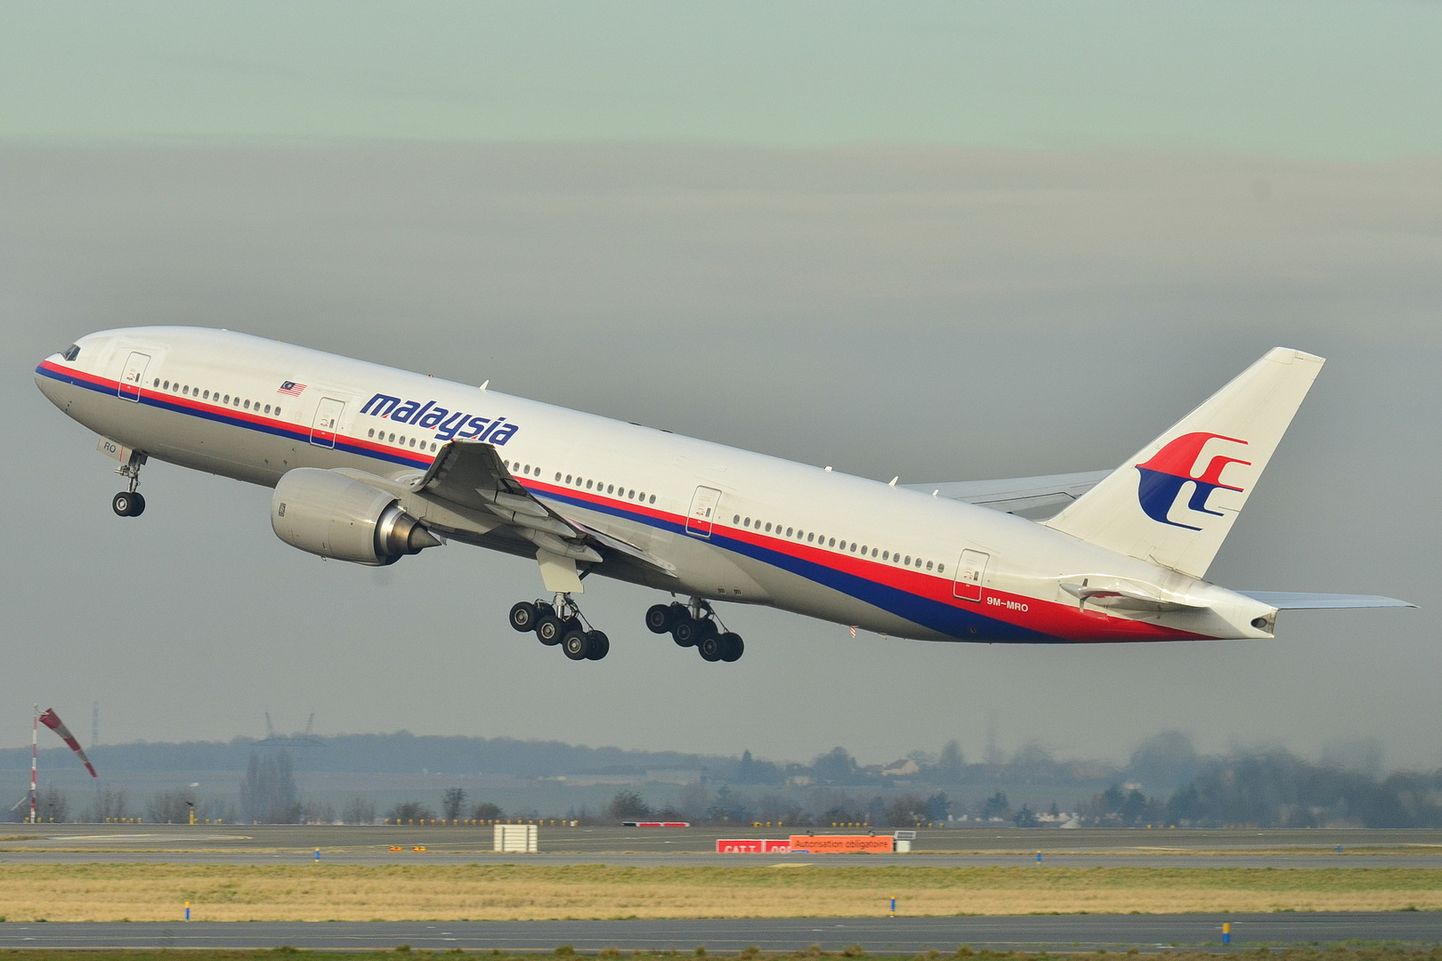 Malaysia Airlinesi lennuk Boeing 777 tõusmas 26. detsembril 2011 õhuku Roissy-Charles de Gaulle'i lennuväljalt. Sama lennuk kadus 8. märtsil 2014